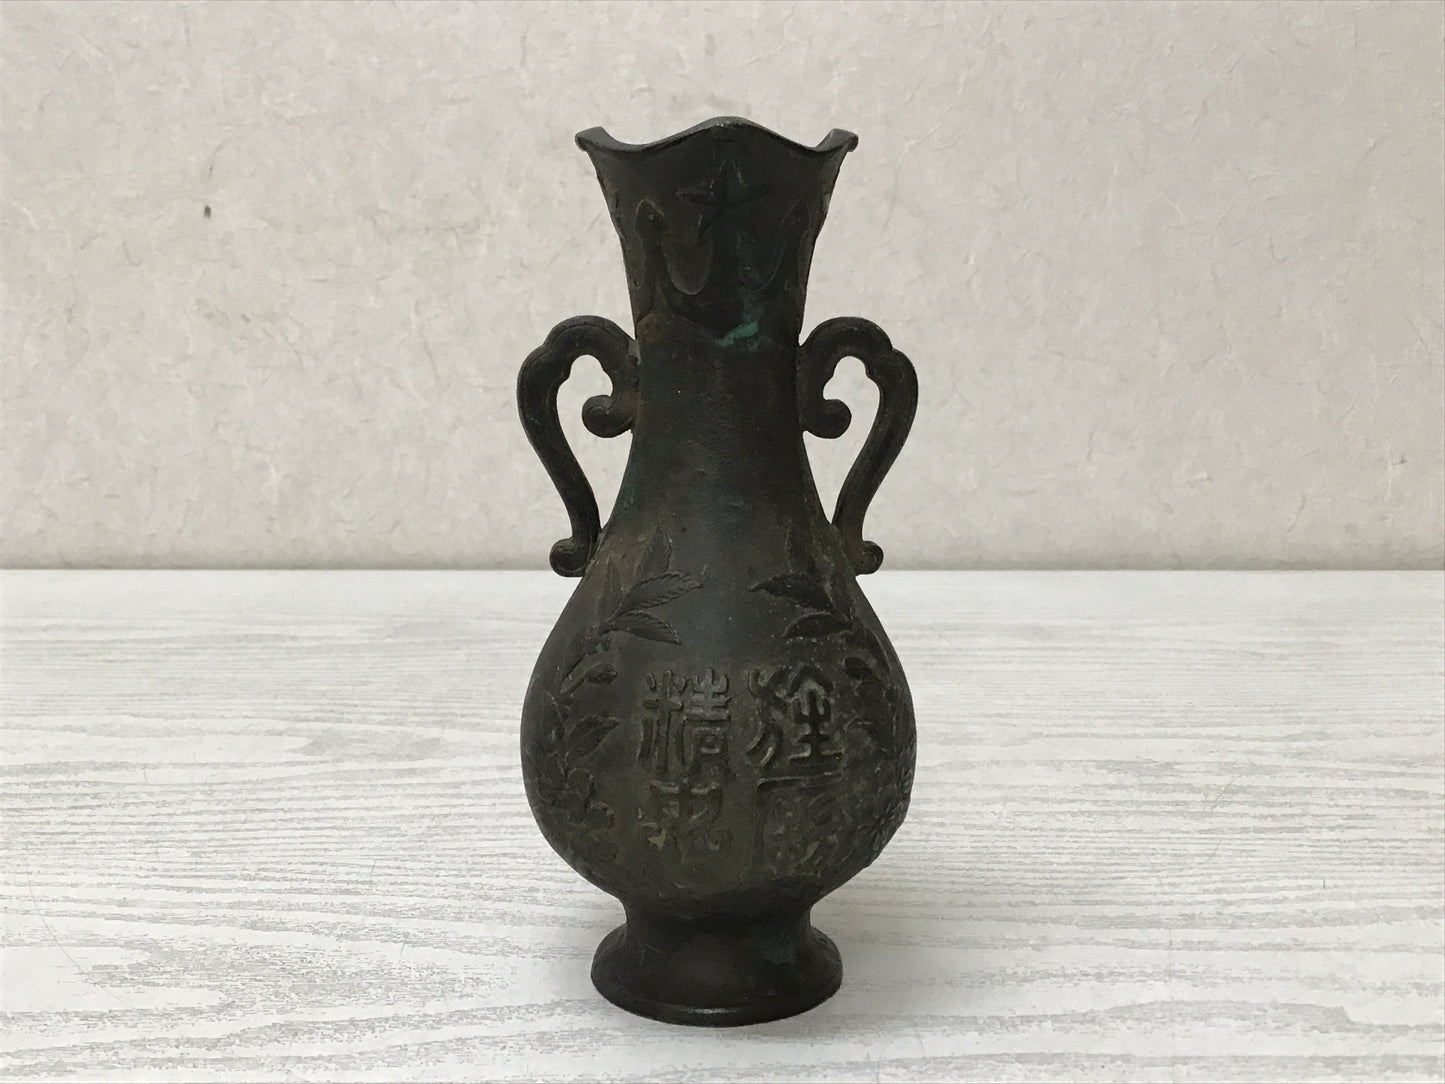 Y2798 Imperial Japan Army Copper Flower Vase memorial pot Japanese WW2 vintage